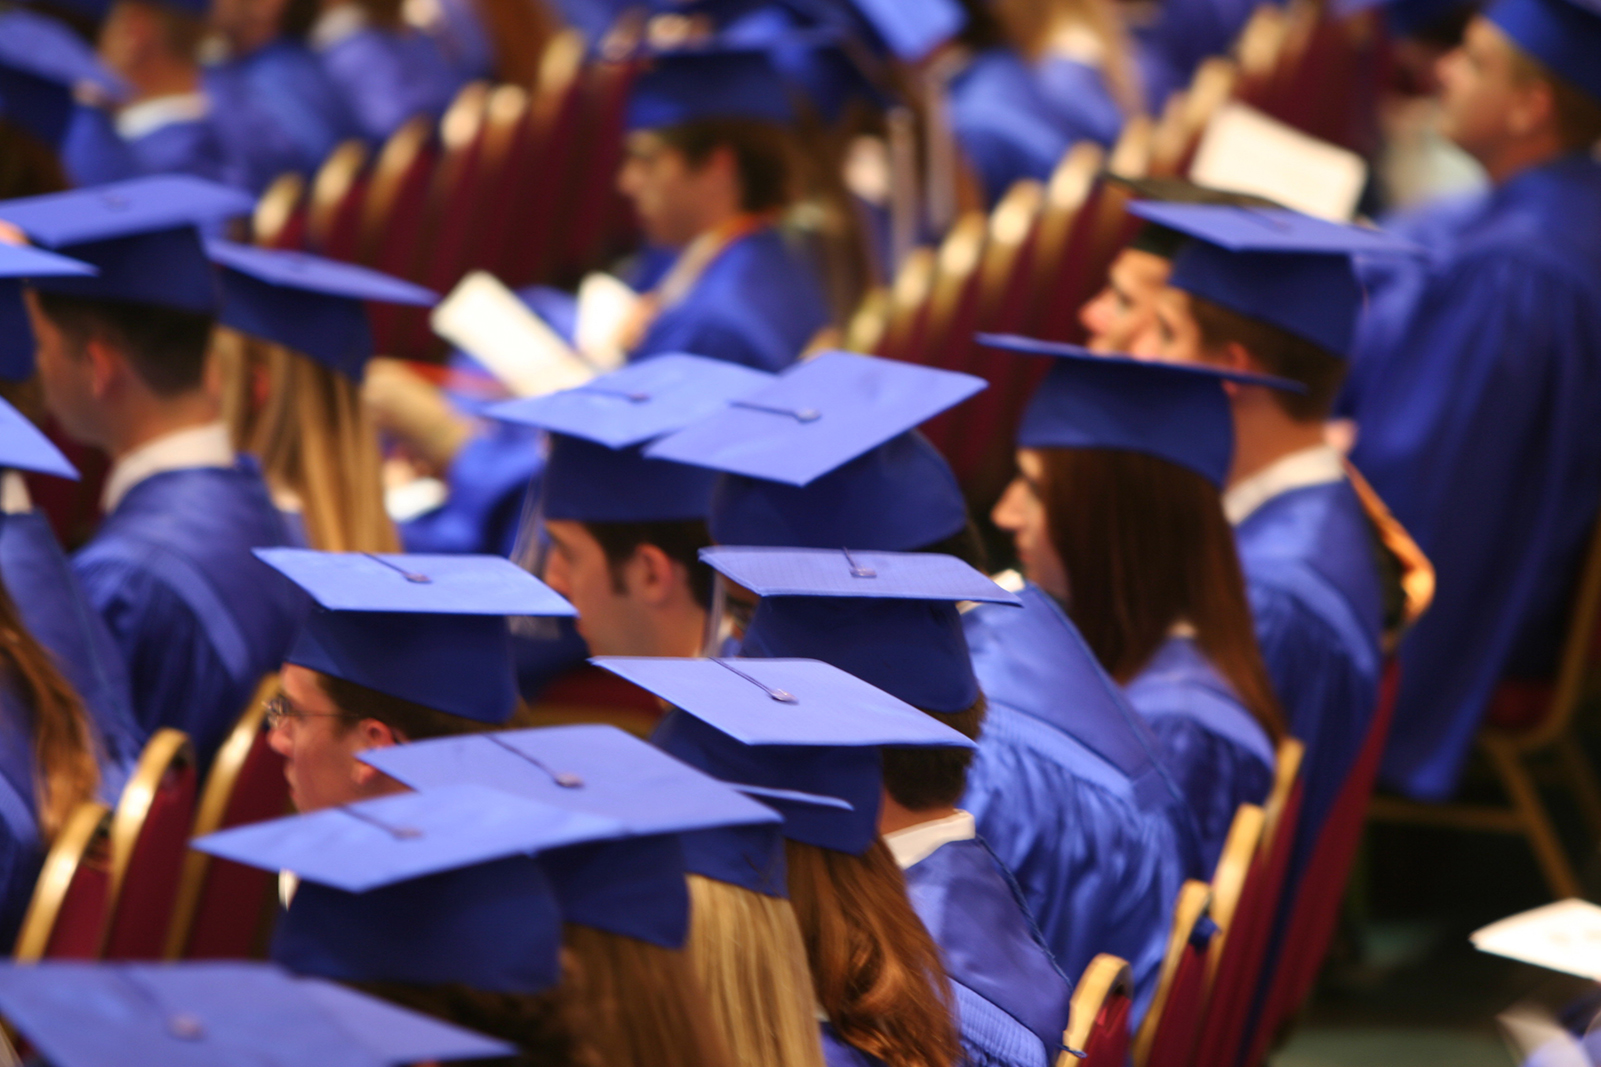 MEP actualiza protocolo de graduaciones y permitirá dos acompañantes por alumno